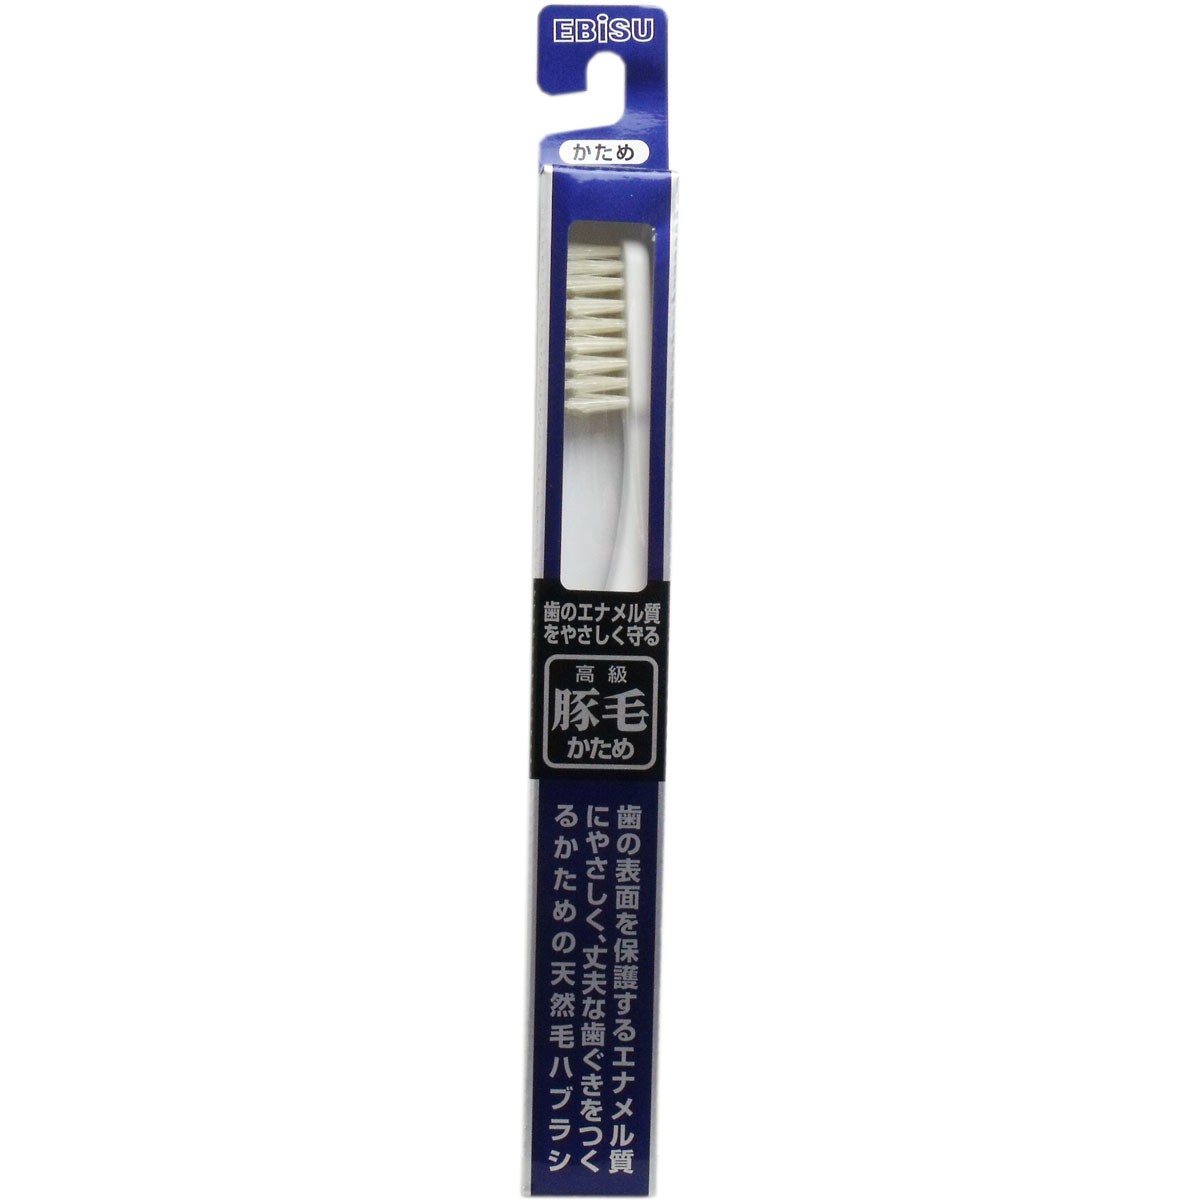 Ebisu - Toothbrush (B-T35) - 1pc